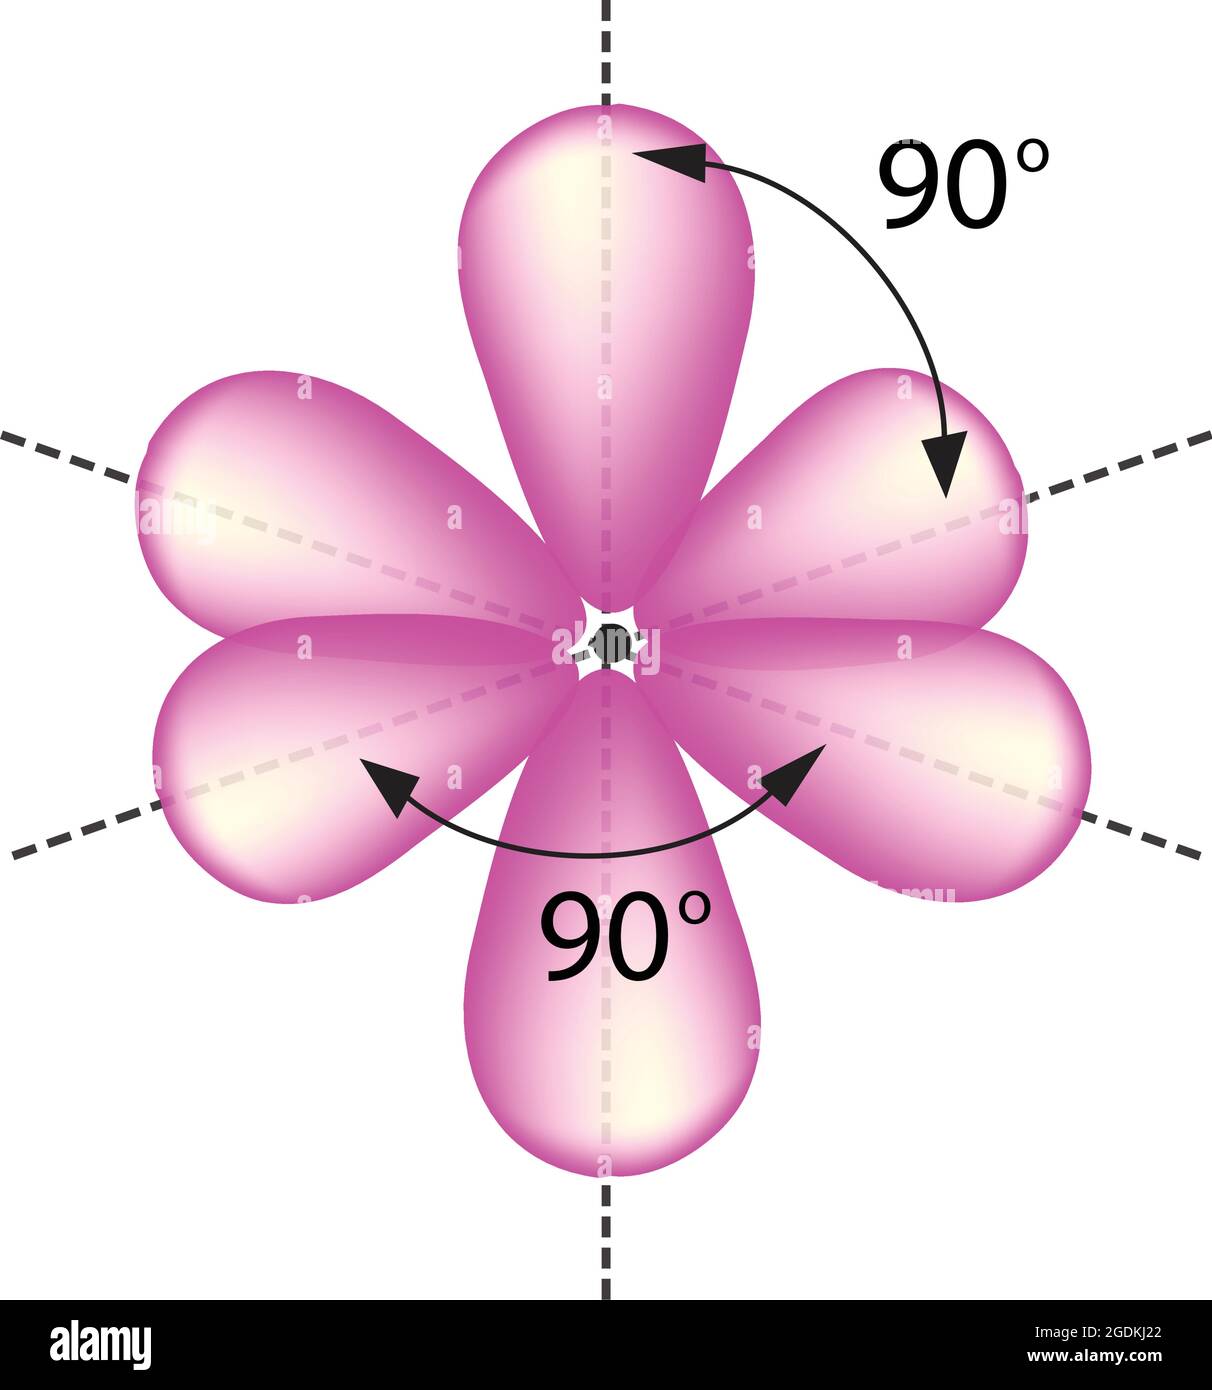 Oktaedrale Anordnung von sechs hybriden Orbitalen, verwenden sechs Valenzschalen-Atomorbitale Stock Vektor